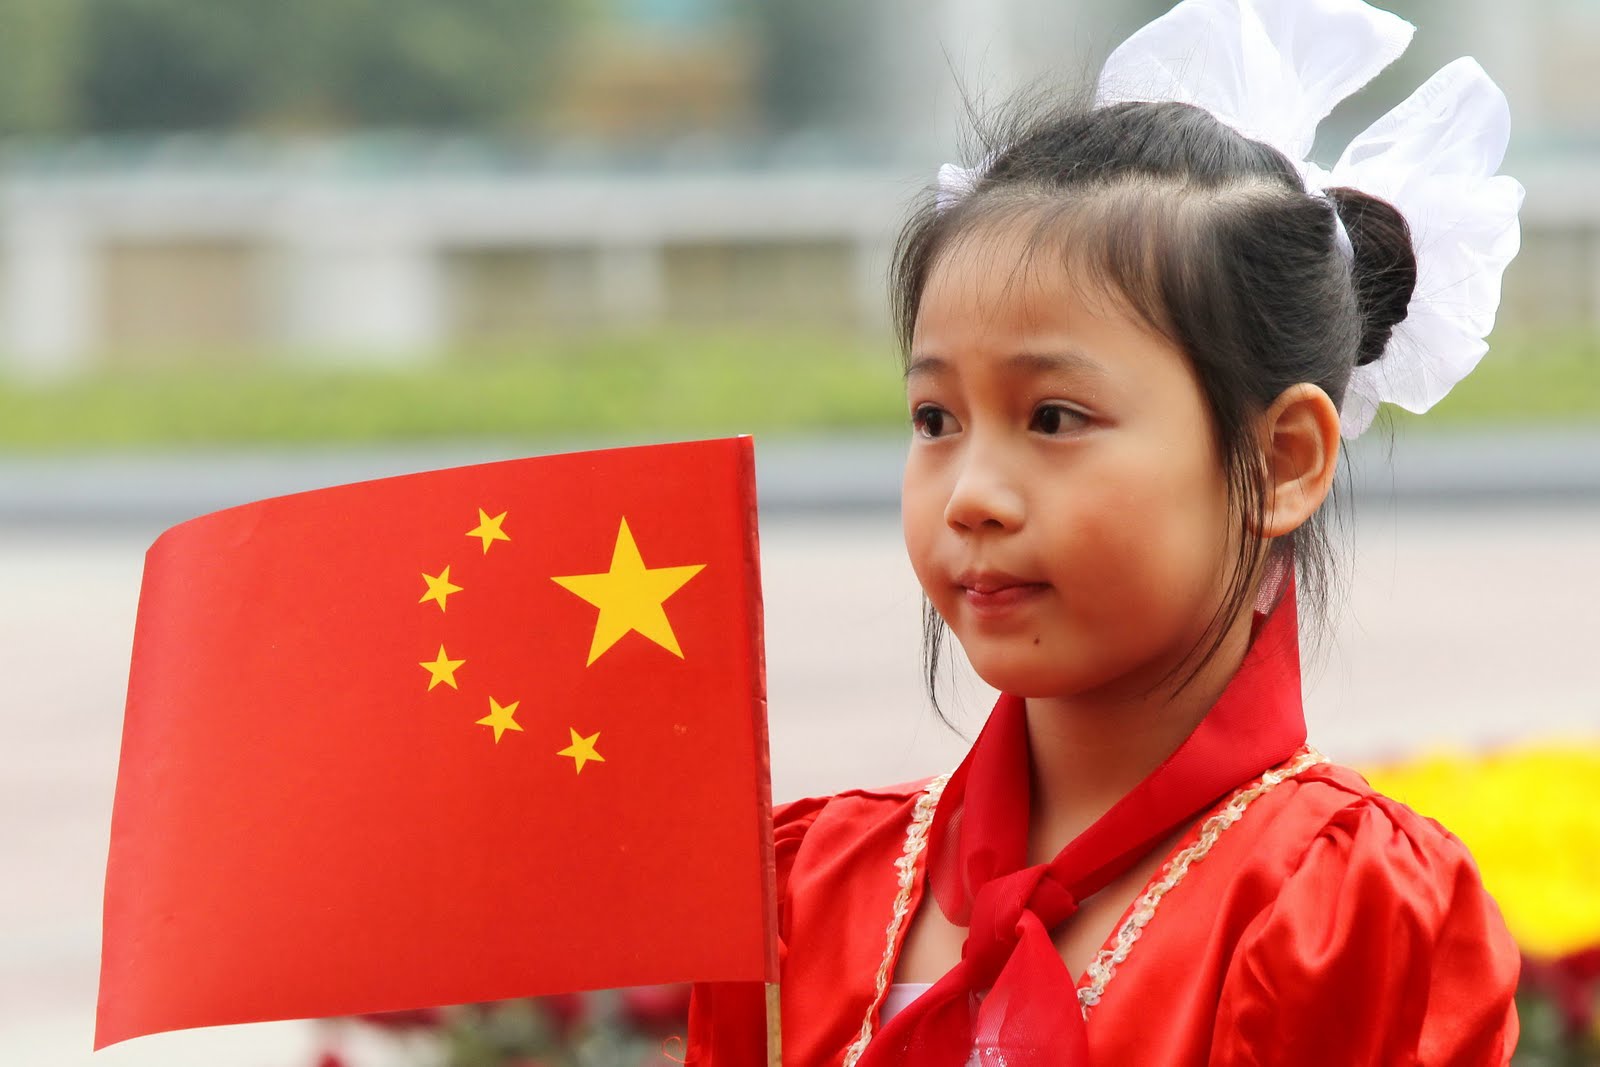 Cờ Trung Quốc “6 sao” – là vô tình hay cố ý?